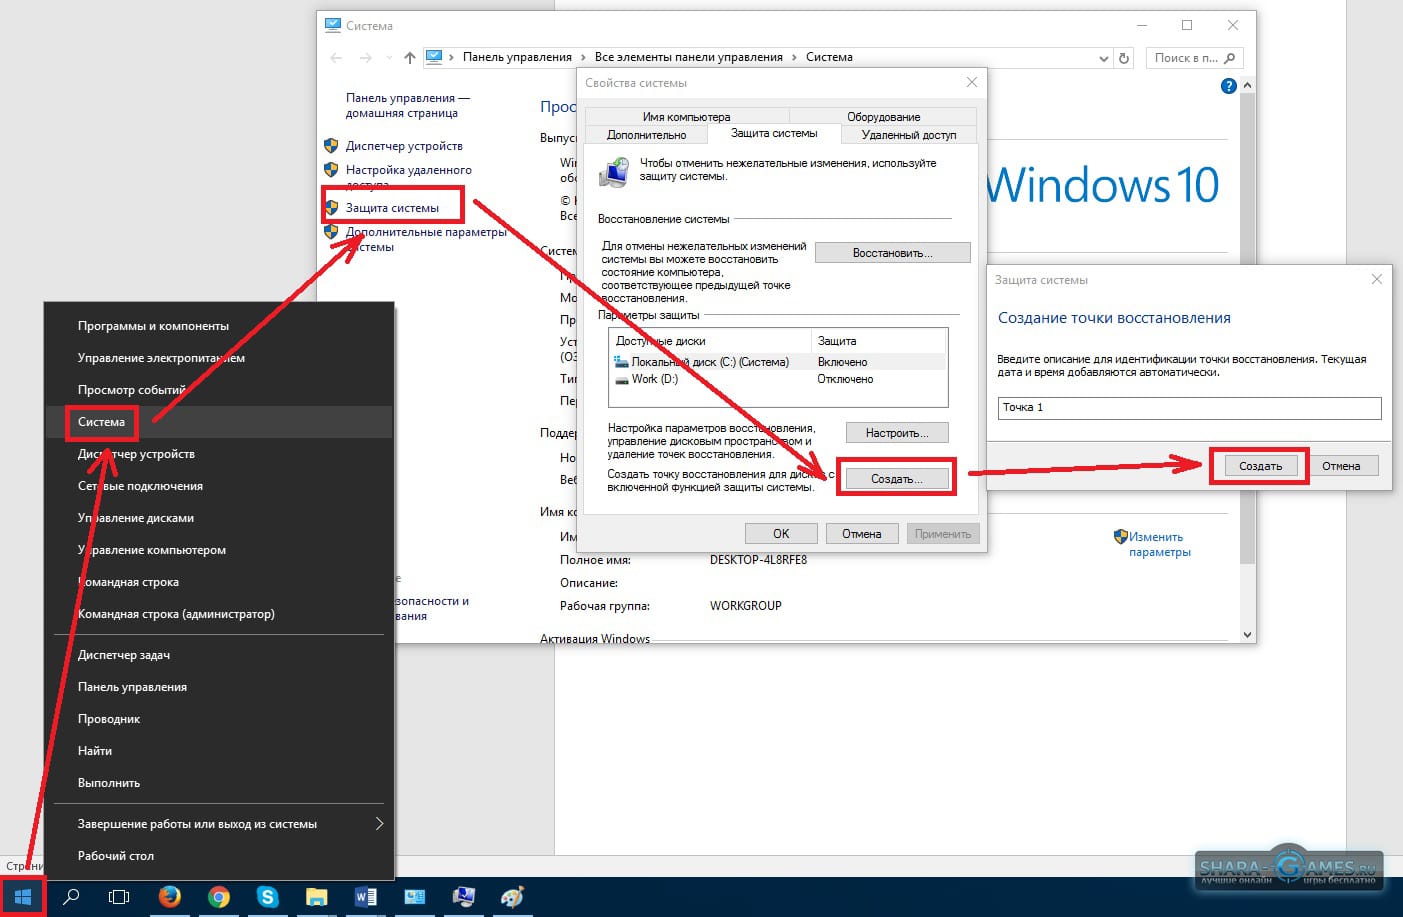 Точка отката виндовс. Создание точки восстановления Windows 10. Контрольные точки Windows 10. Как создать контрольную точку в Windows 10. Как сделать точку восстановления Windows.